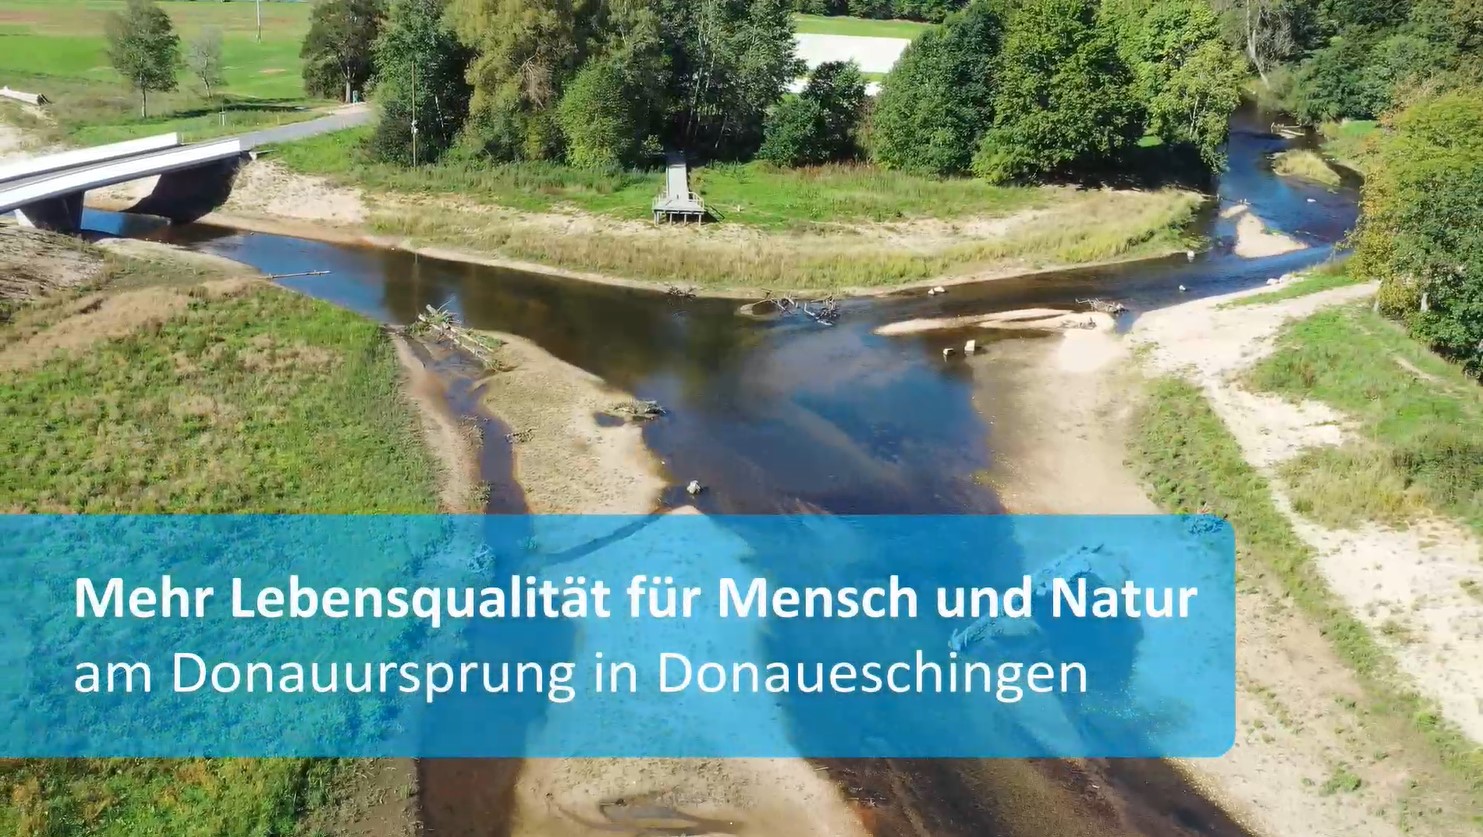  Vitale Gewässer - Vorschaubild Video zur Maßnahme Donauursprung in Donaueschingen